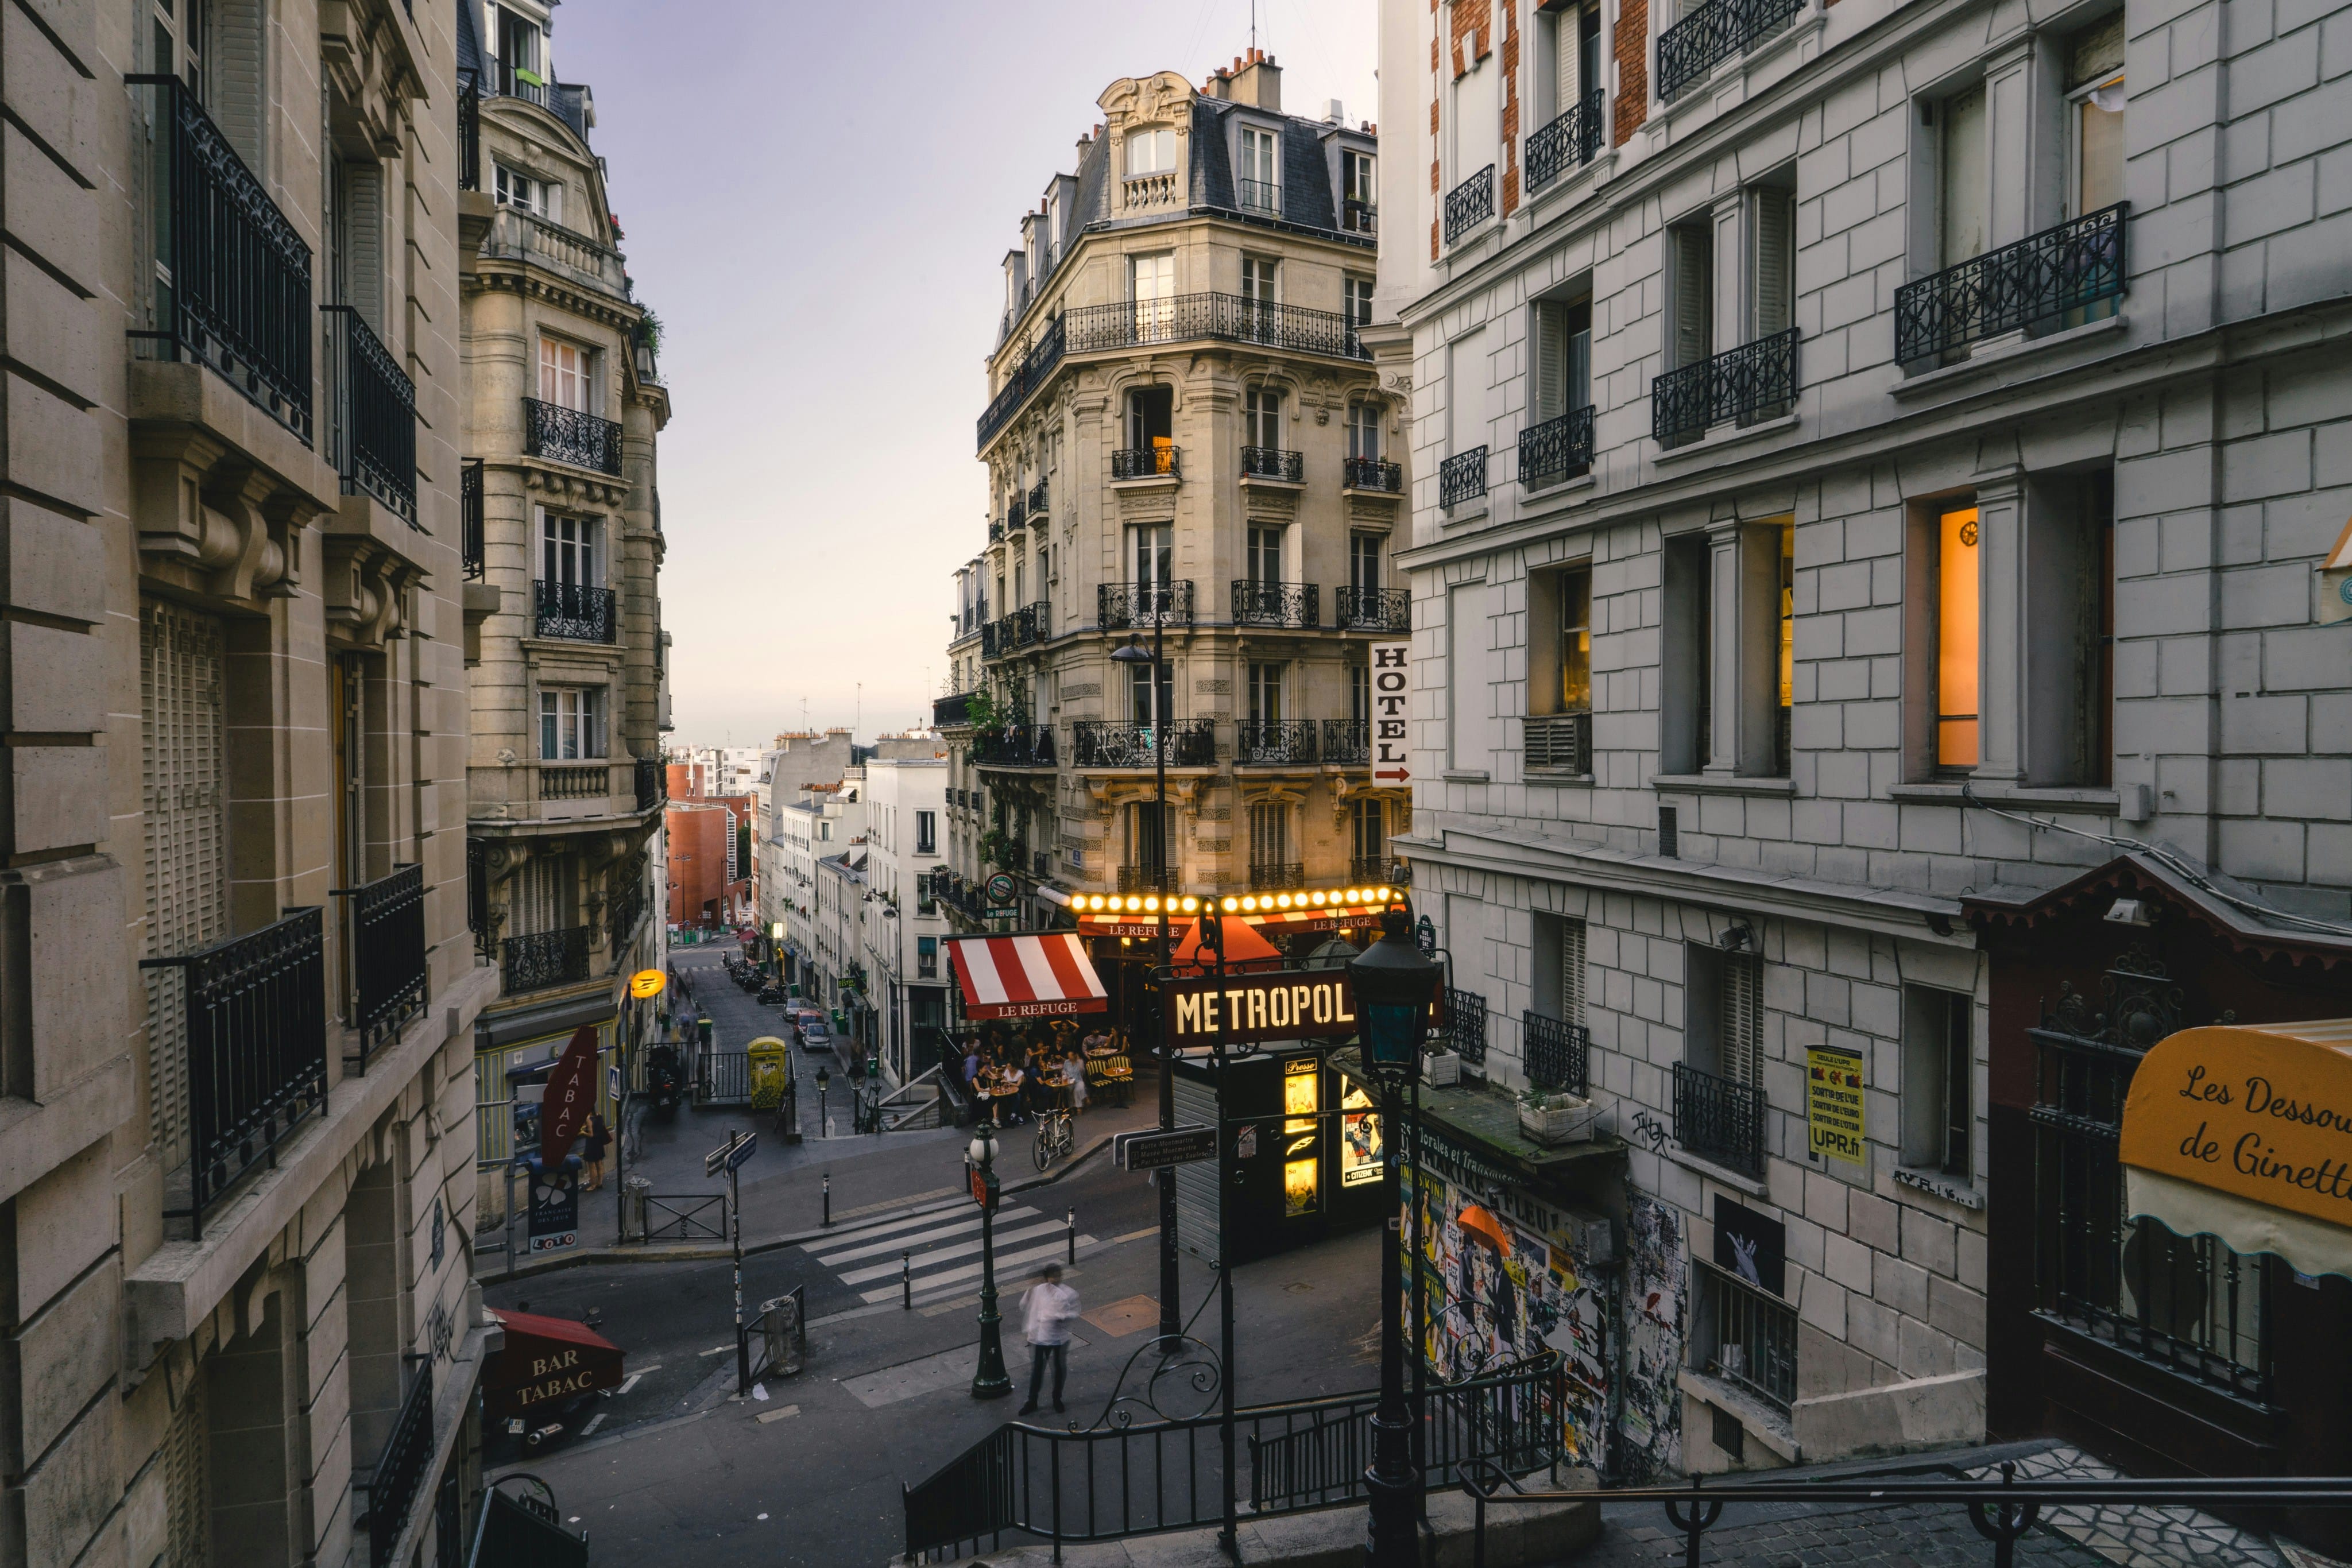 The Montmartre neighborhood in Paris